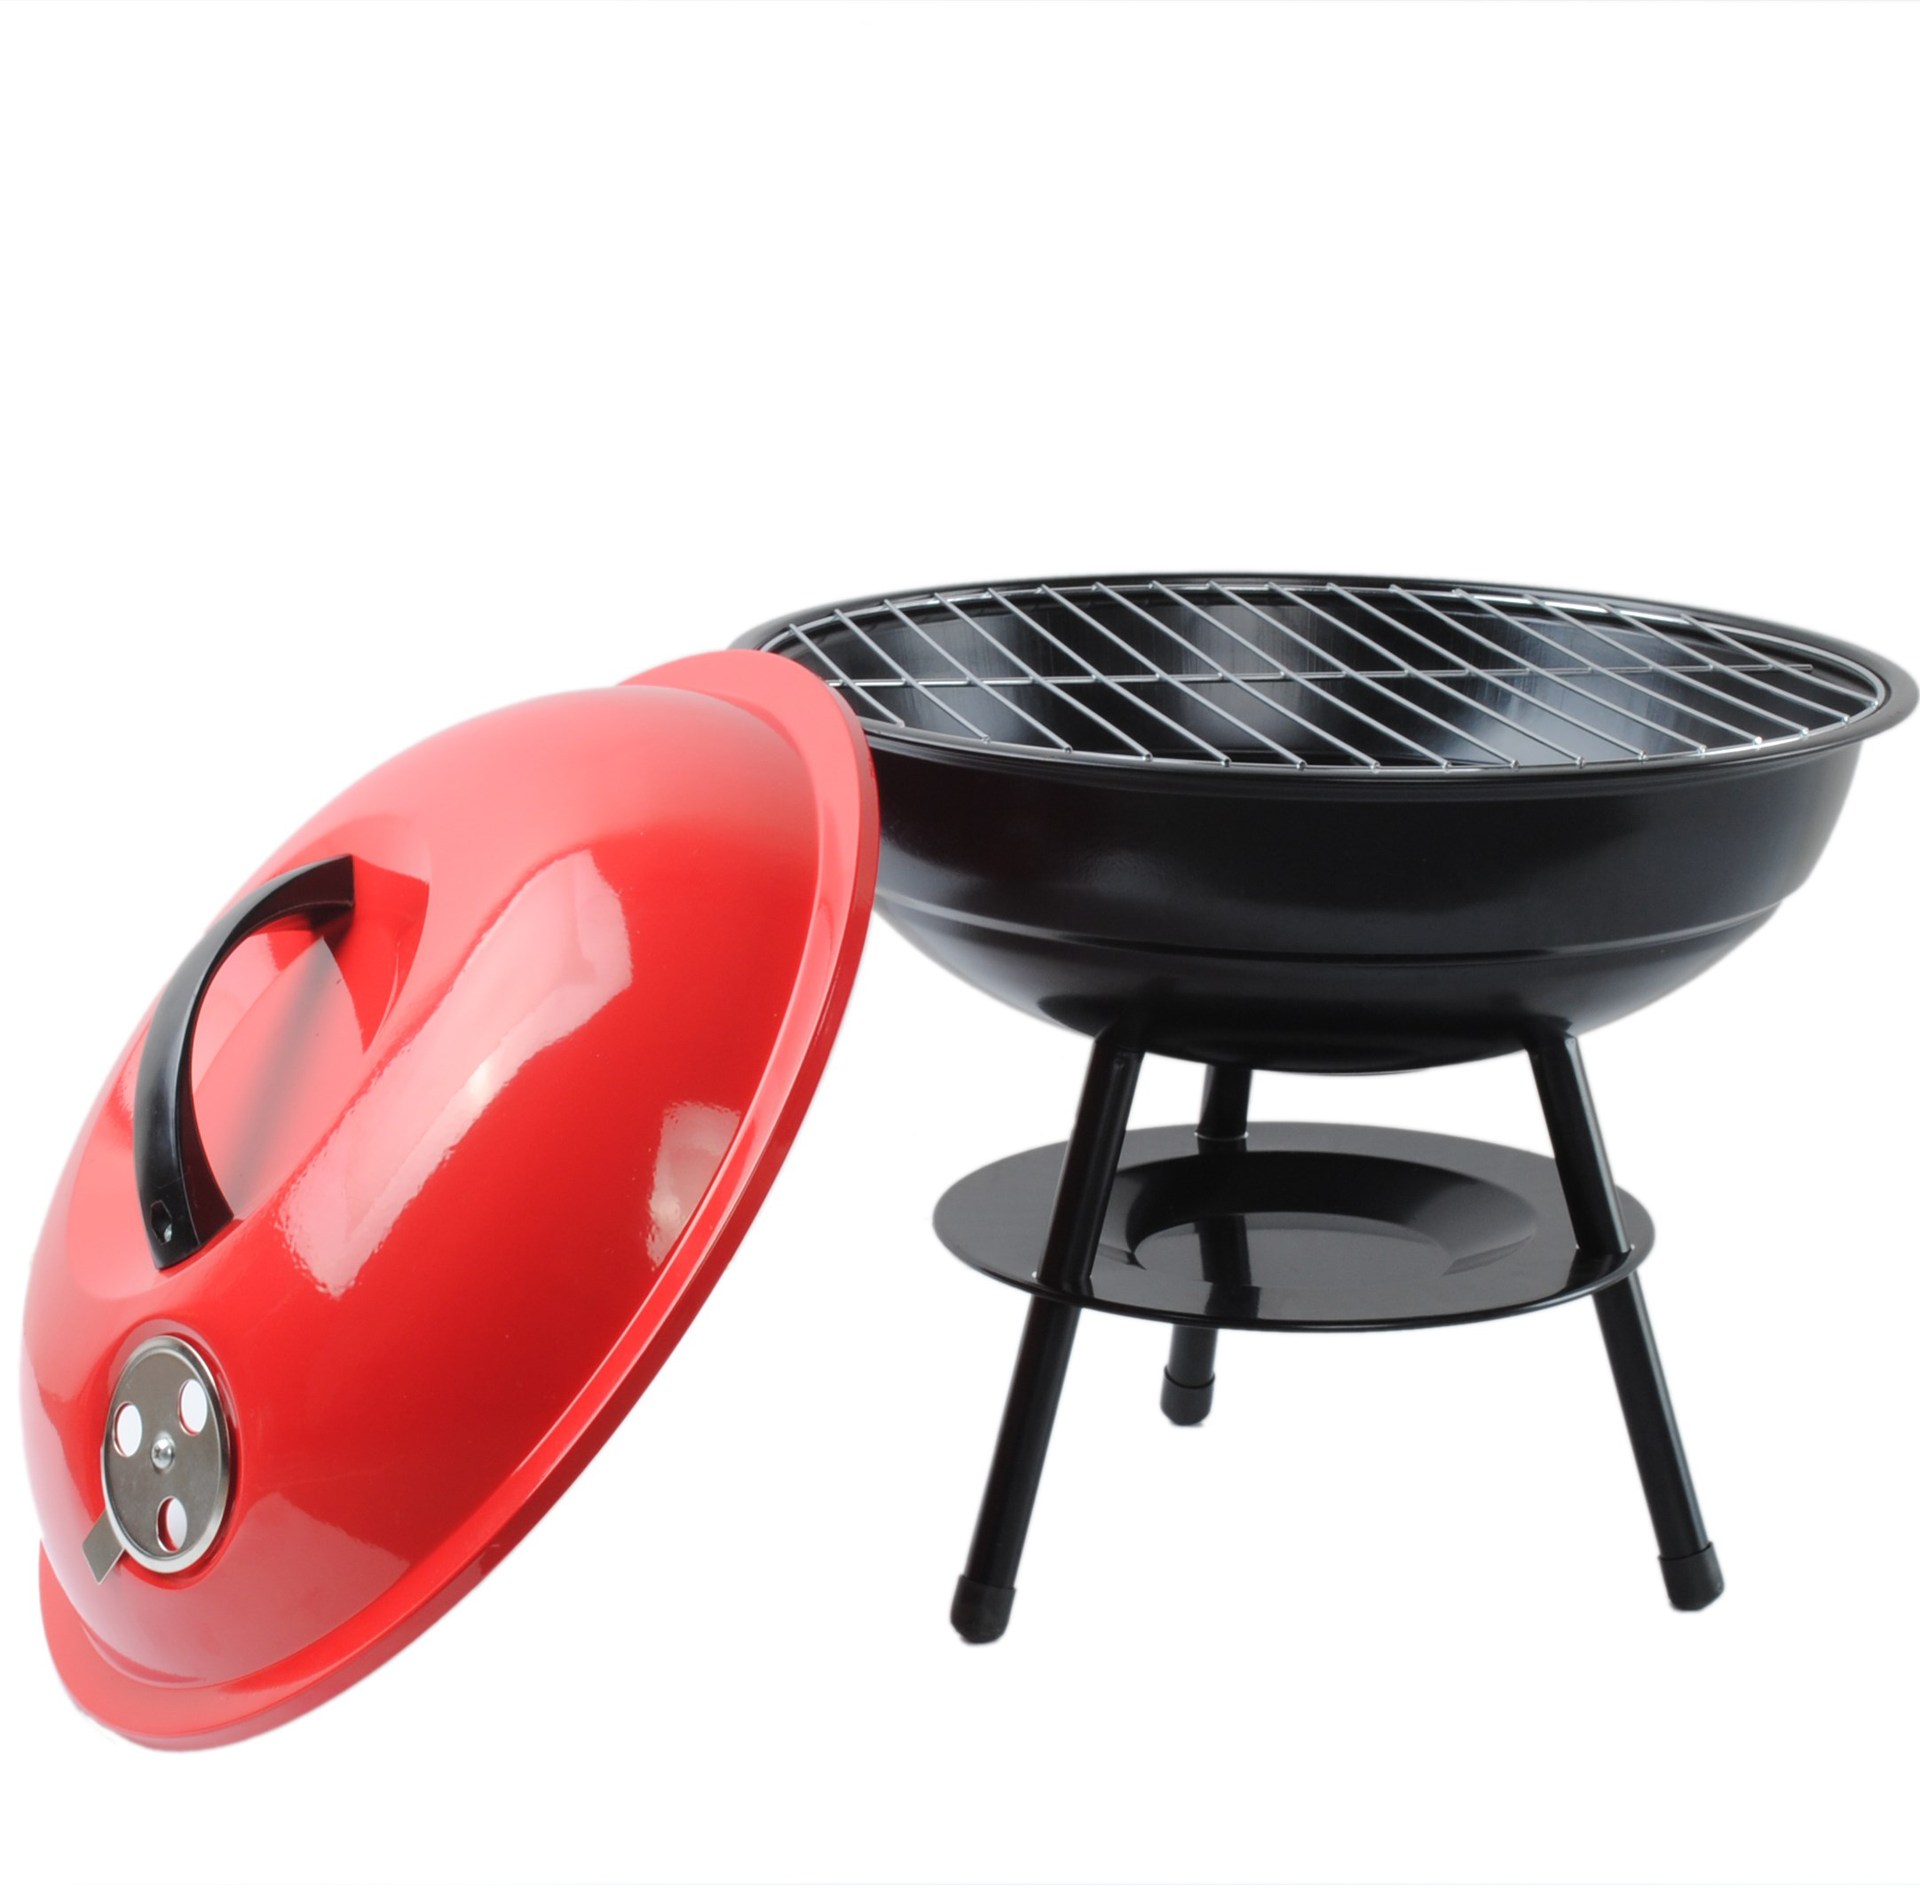 厂家直销烧烤炉木炭户外便携烧烤架 不锈钢烧烤炉 BBQ烧烤炉-阿里巴巴